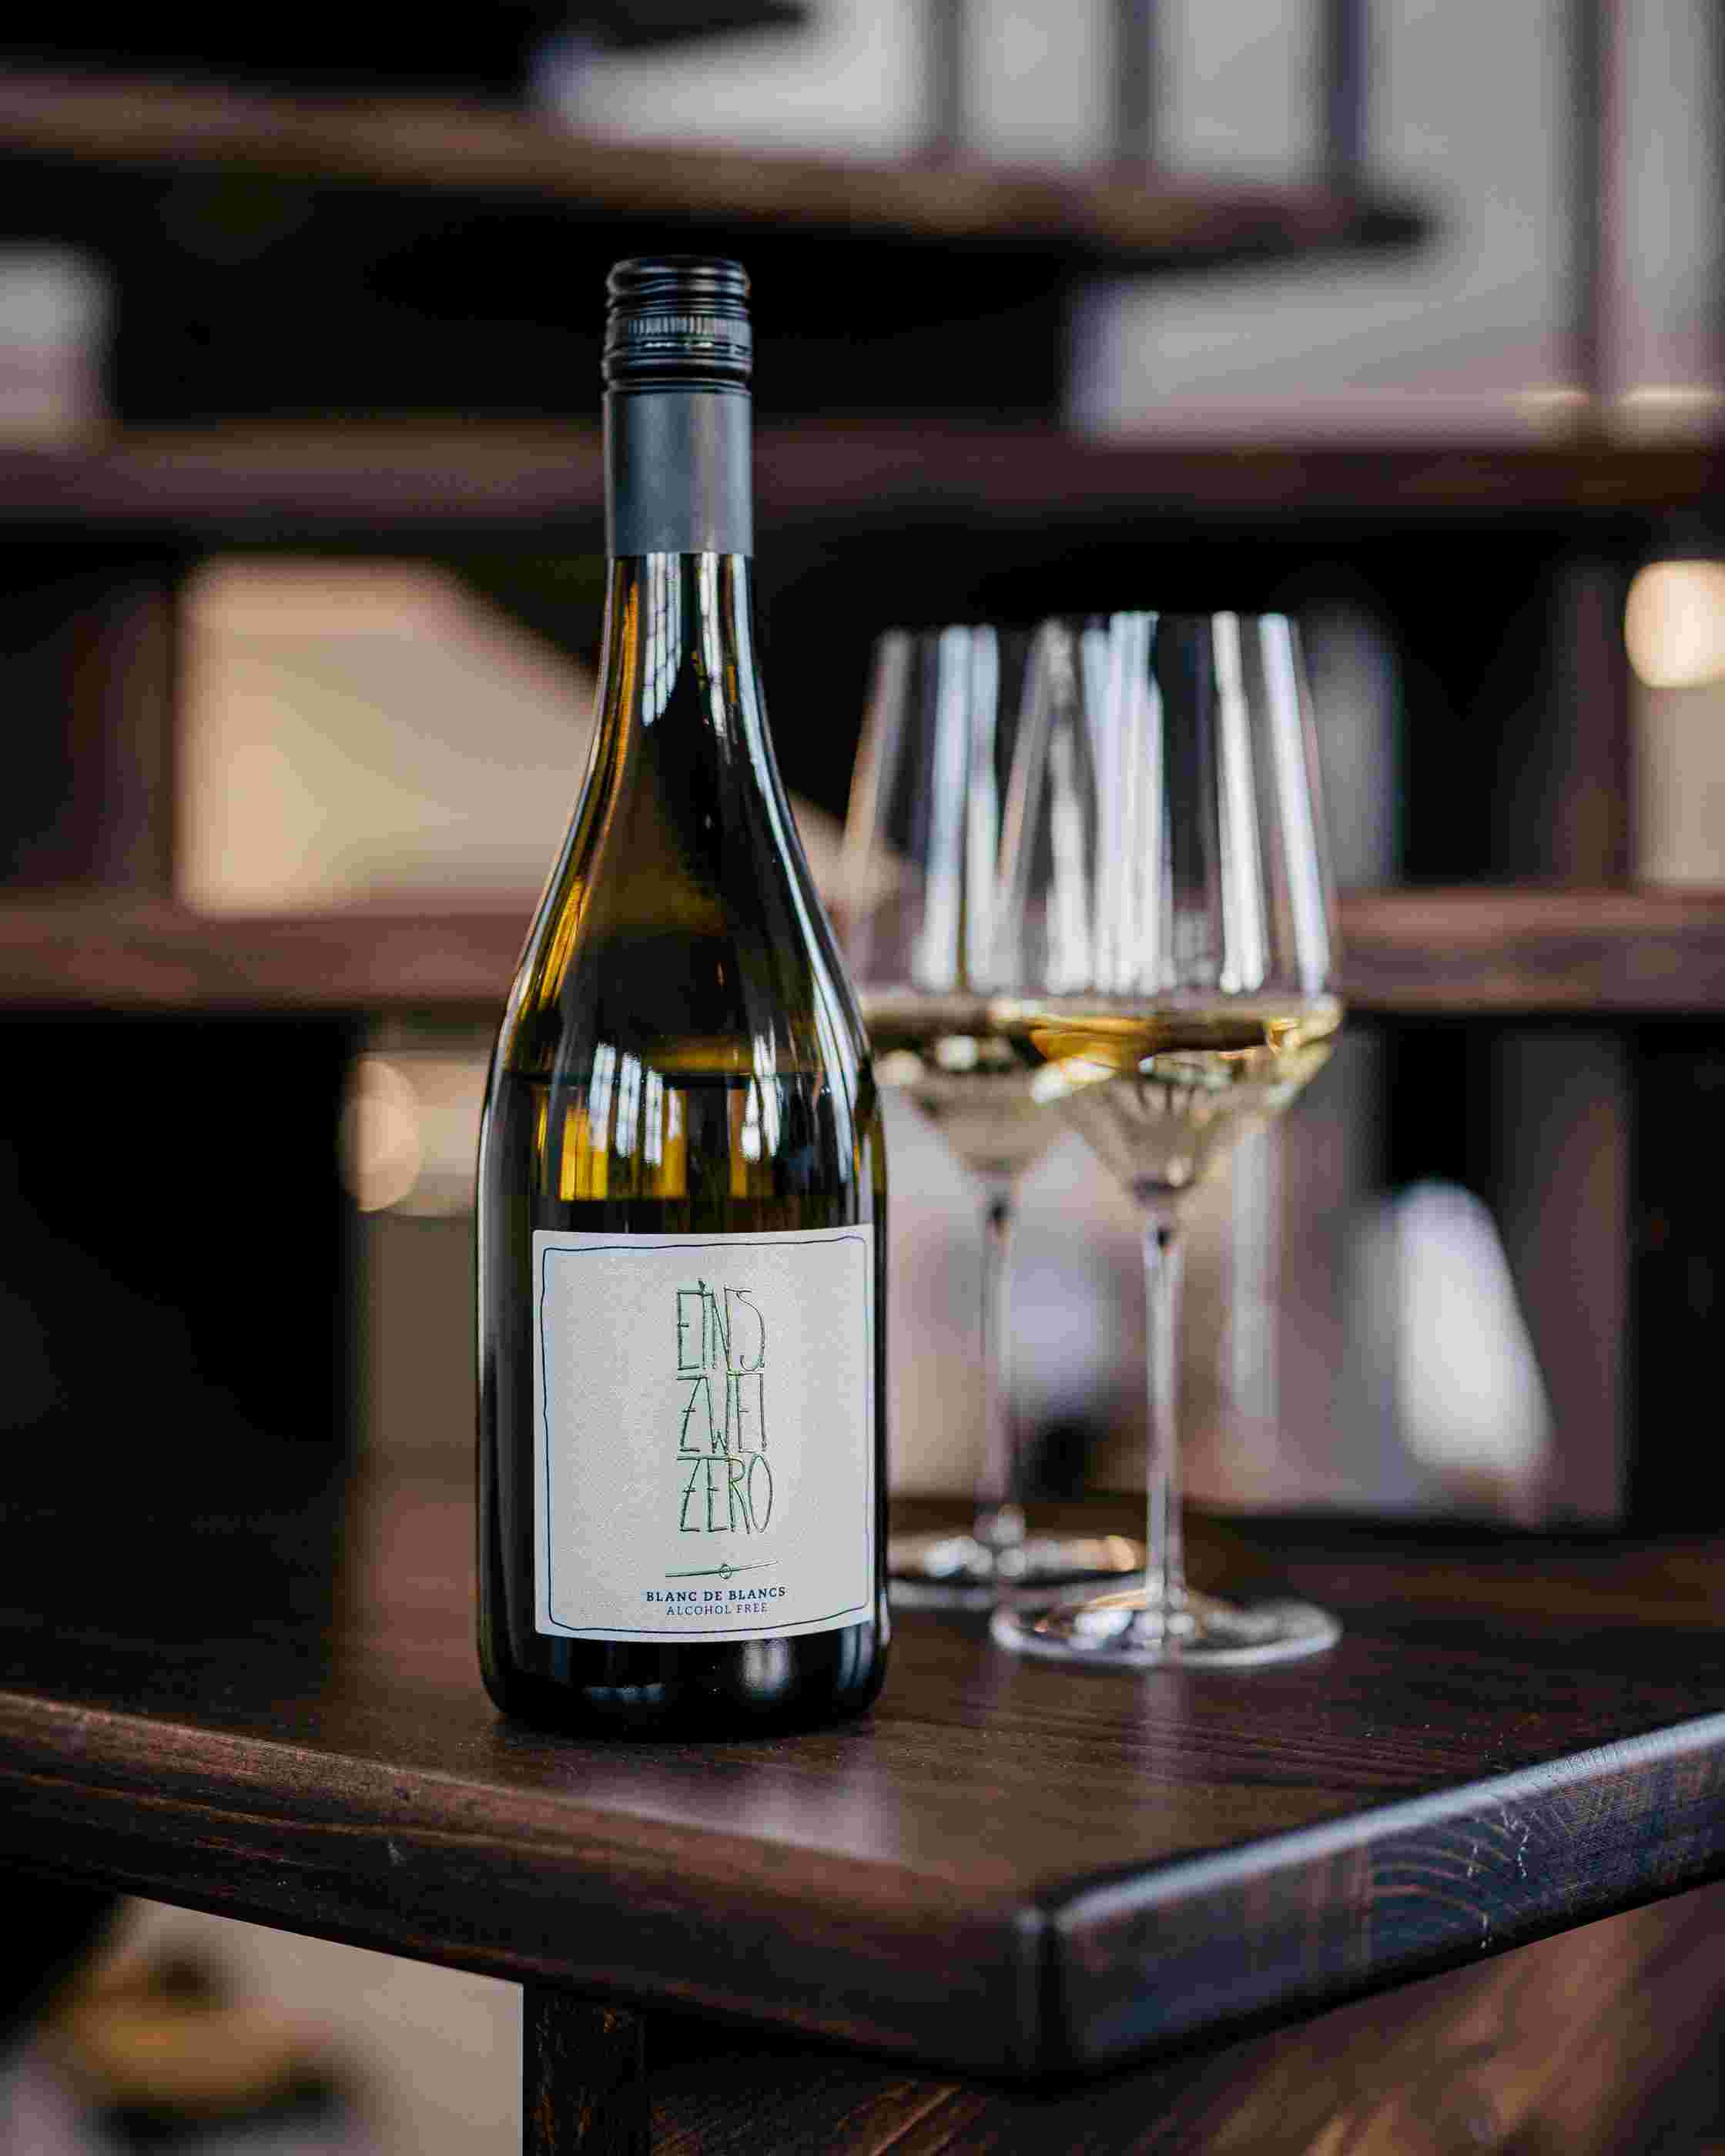 Sfeerfoto met voorop een fles Leitz Eins-Zwei-Zero Blanc de Blancs, achteraan staan twee gevulde wijnglazen op een donkere, houten tafel. 